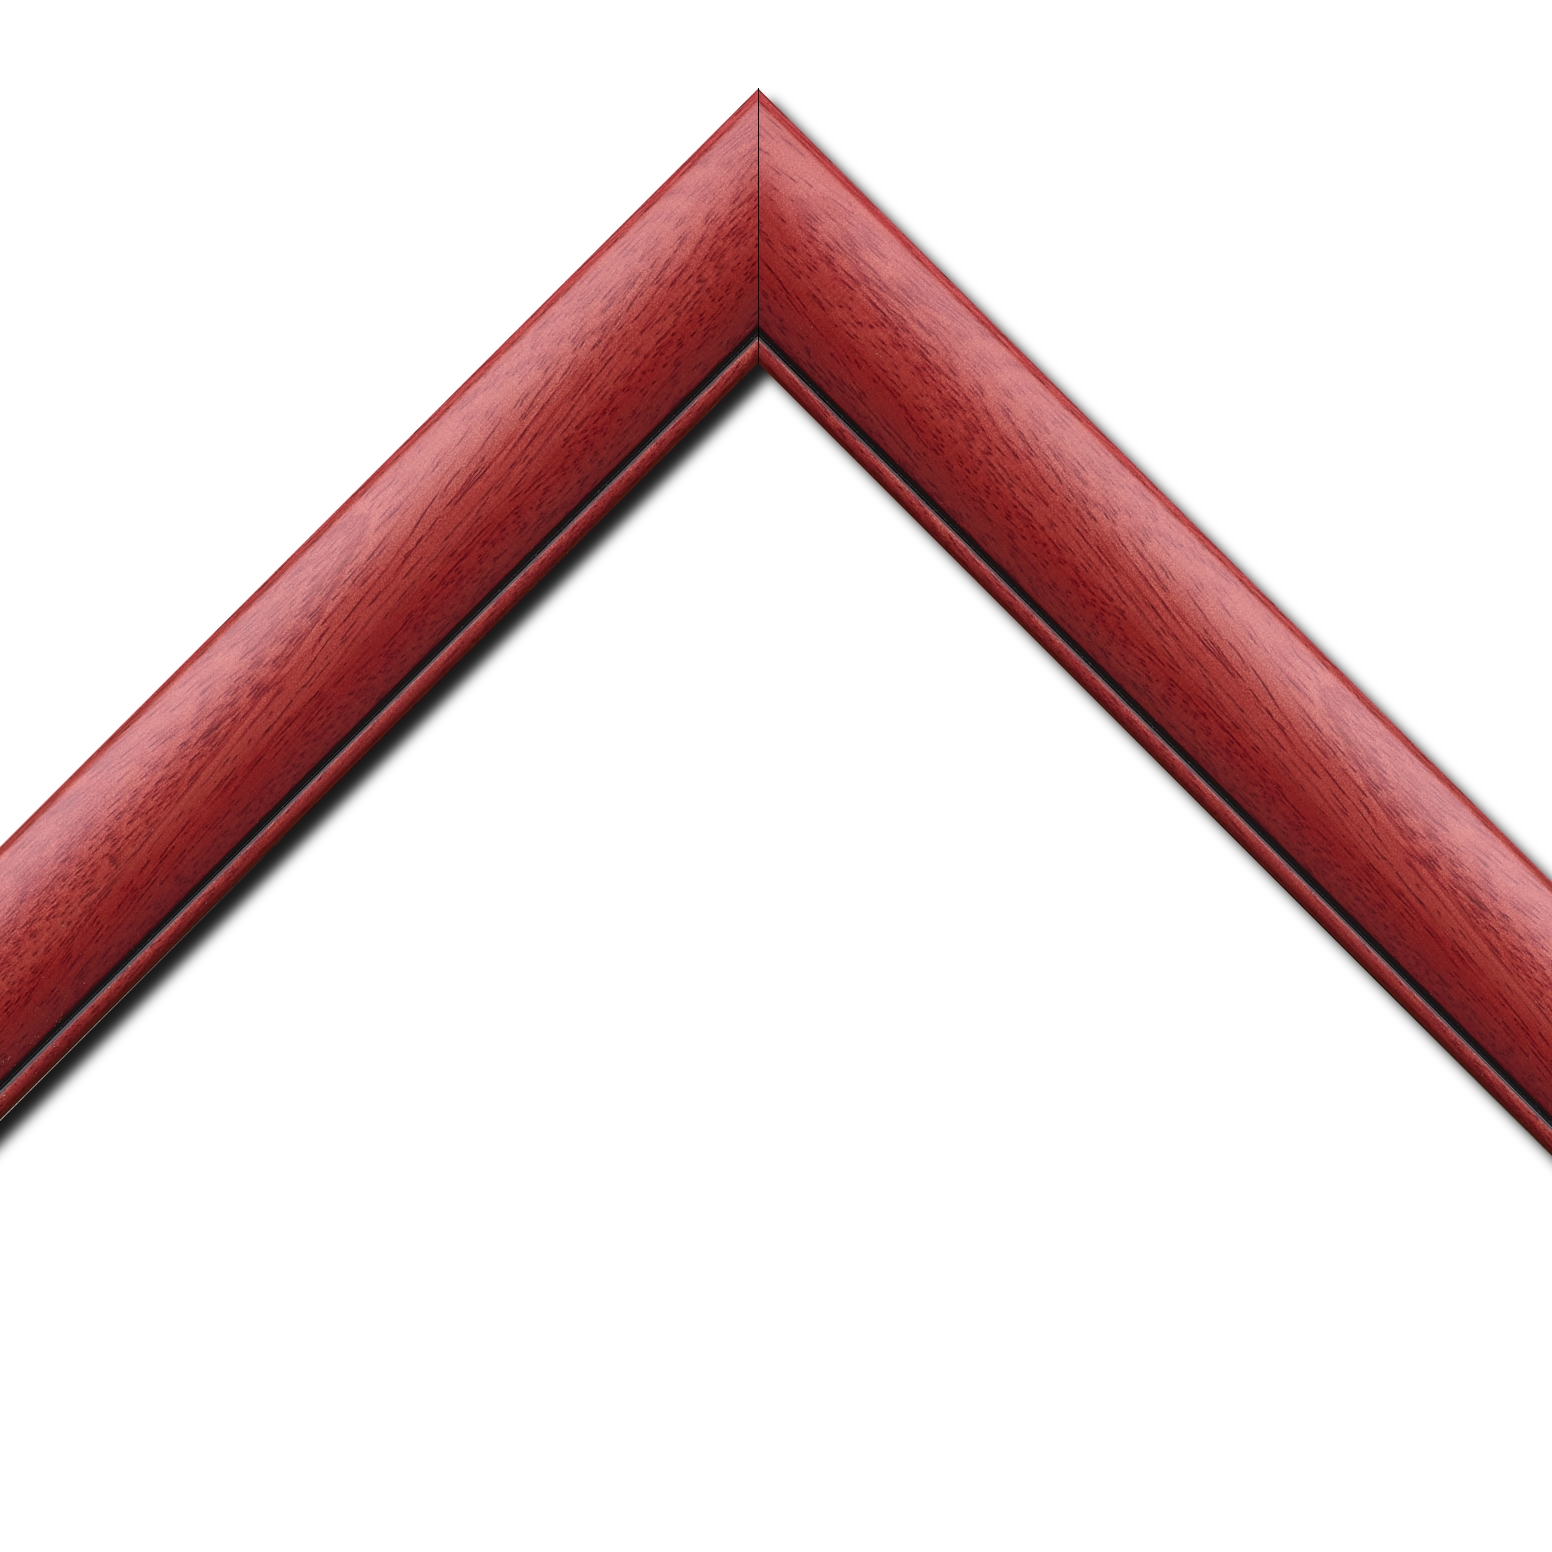 Baguette bois profil arrondi largeur 4.7cm couleur rouge cerise satiné rehaussé d'un filet noir